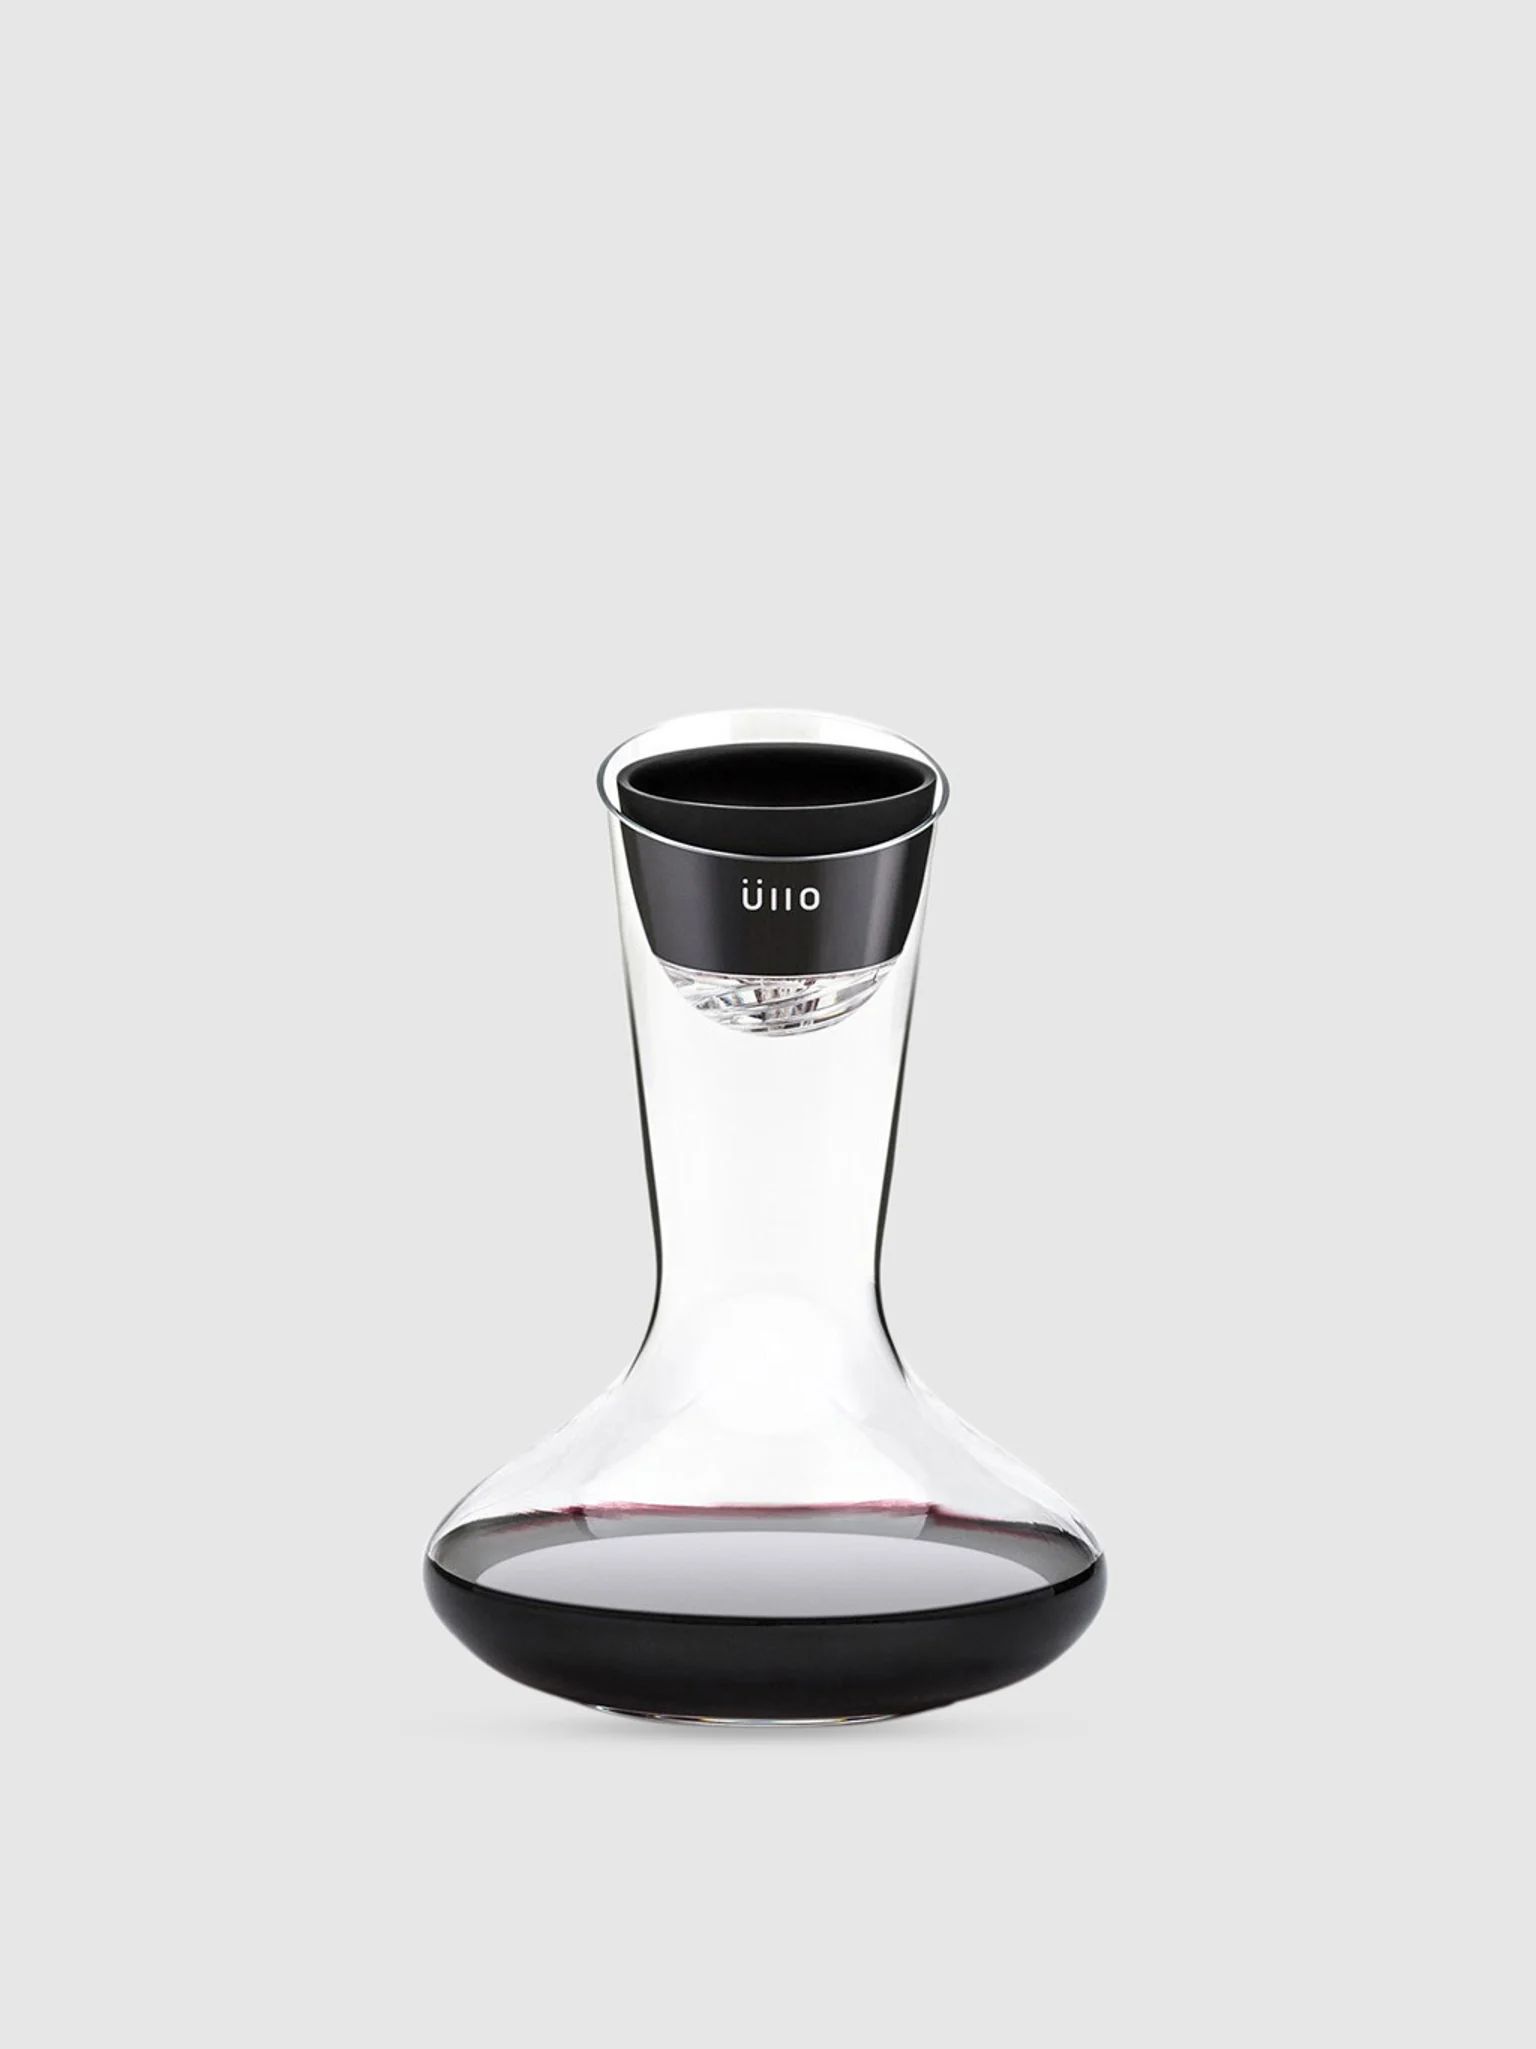 Üllo Wine Purifier + Decanter | Verishop